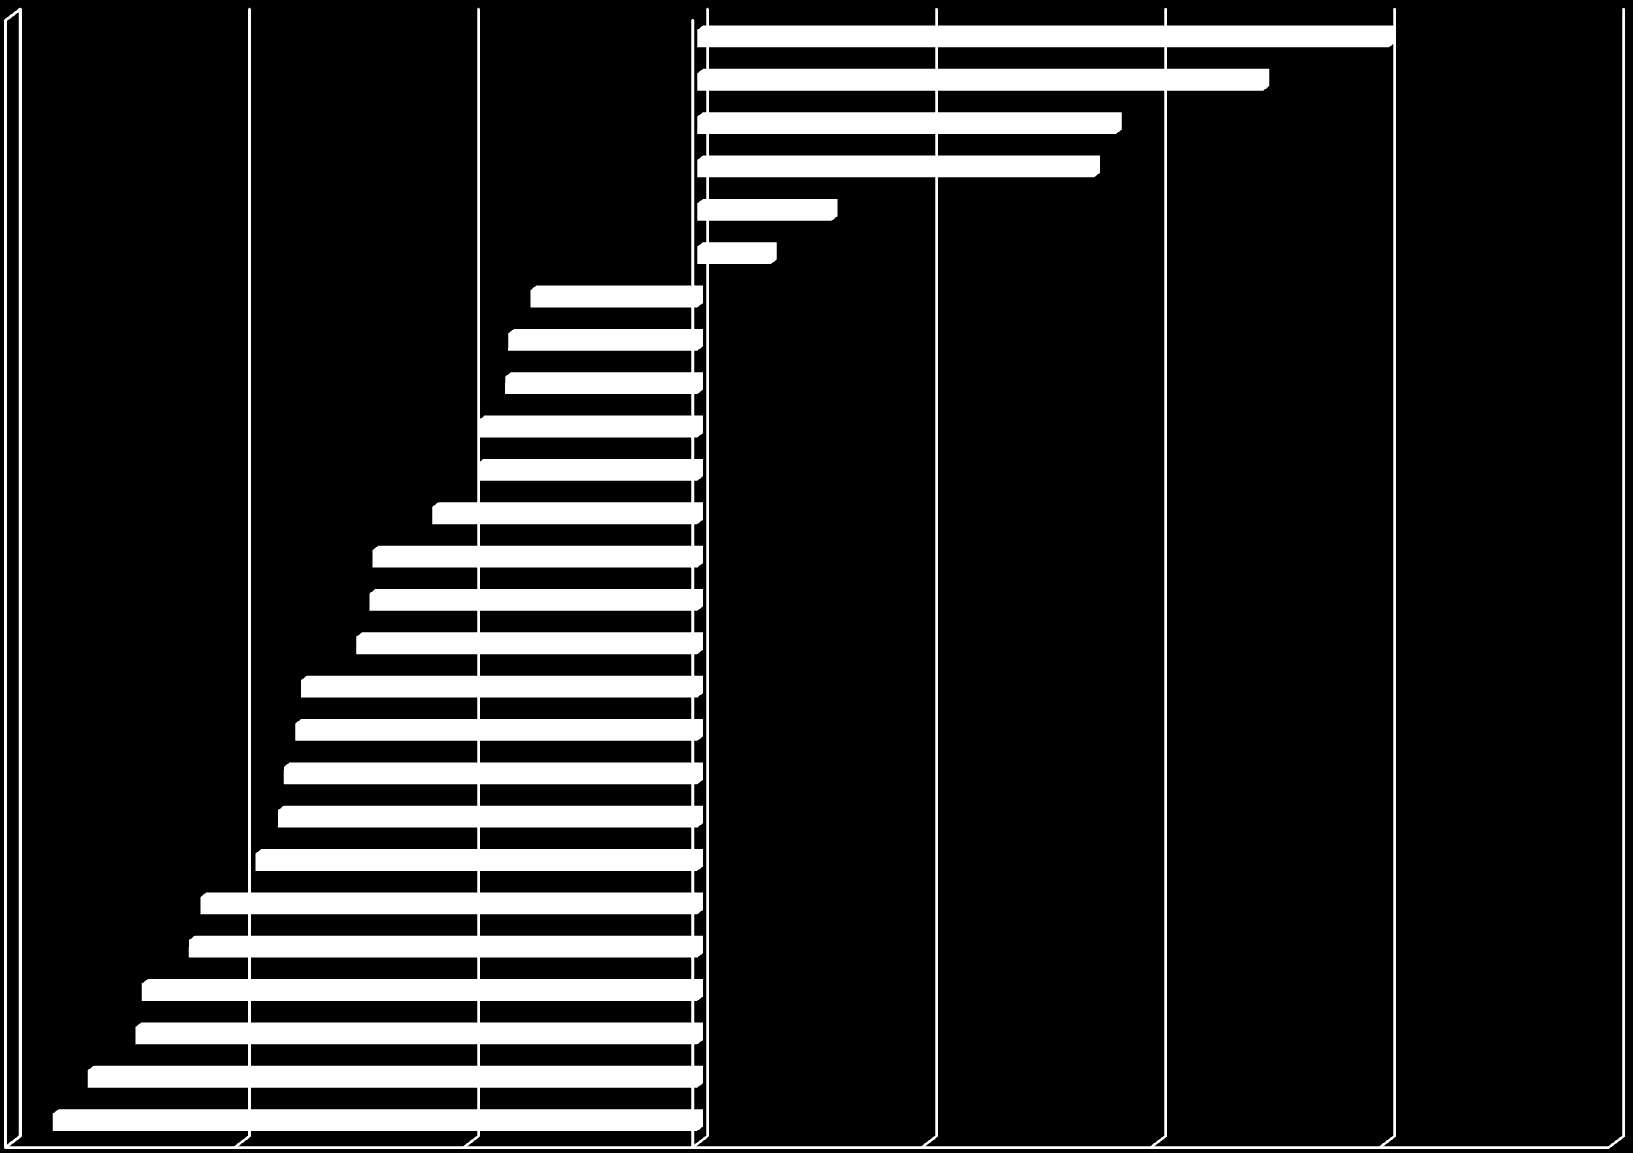 Regionale Unterschiede in der Veränderung der Zahl der 0- bis unter 20-Jährigen am Beispiel der 23 Stadtund Landkreise in Thüringen von 2010 bis 2025 in % Stadt Erfurt Stadt Jena Stadt Suhl